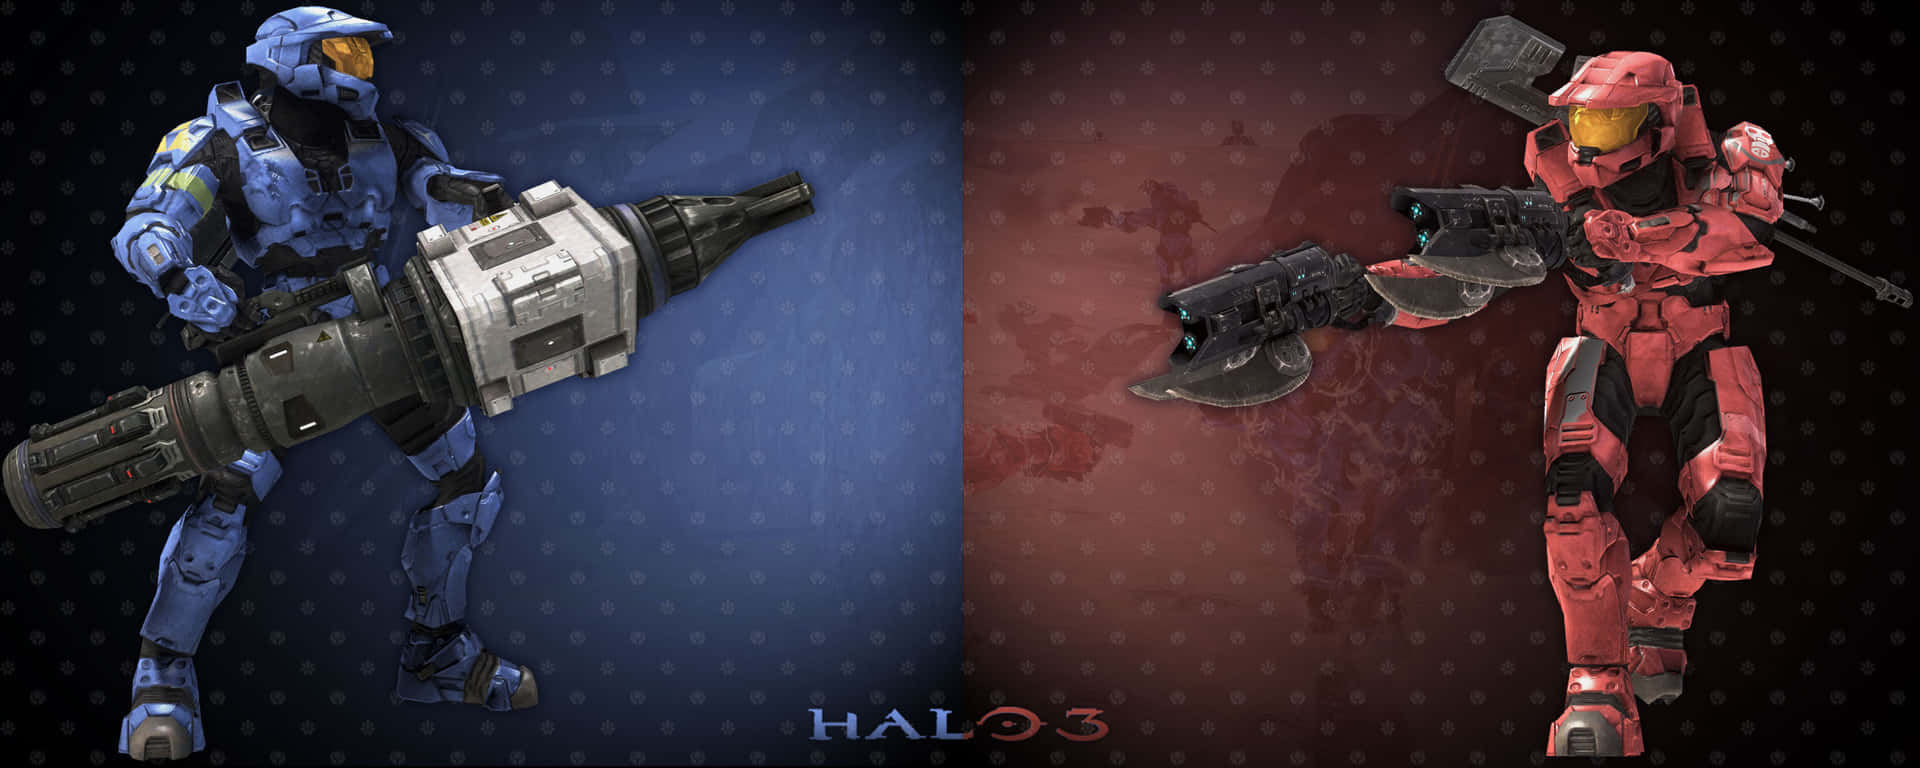 Halo 3 Halo 3 Halo 3 Halo 3 Halo 3 Halo 3 Halo 3 Halo 3 Wallpaper